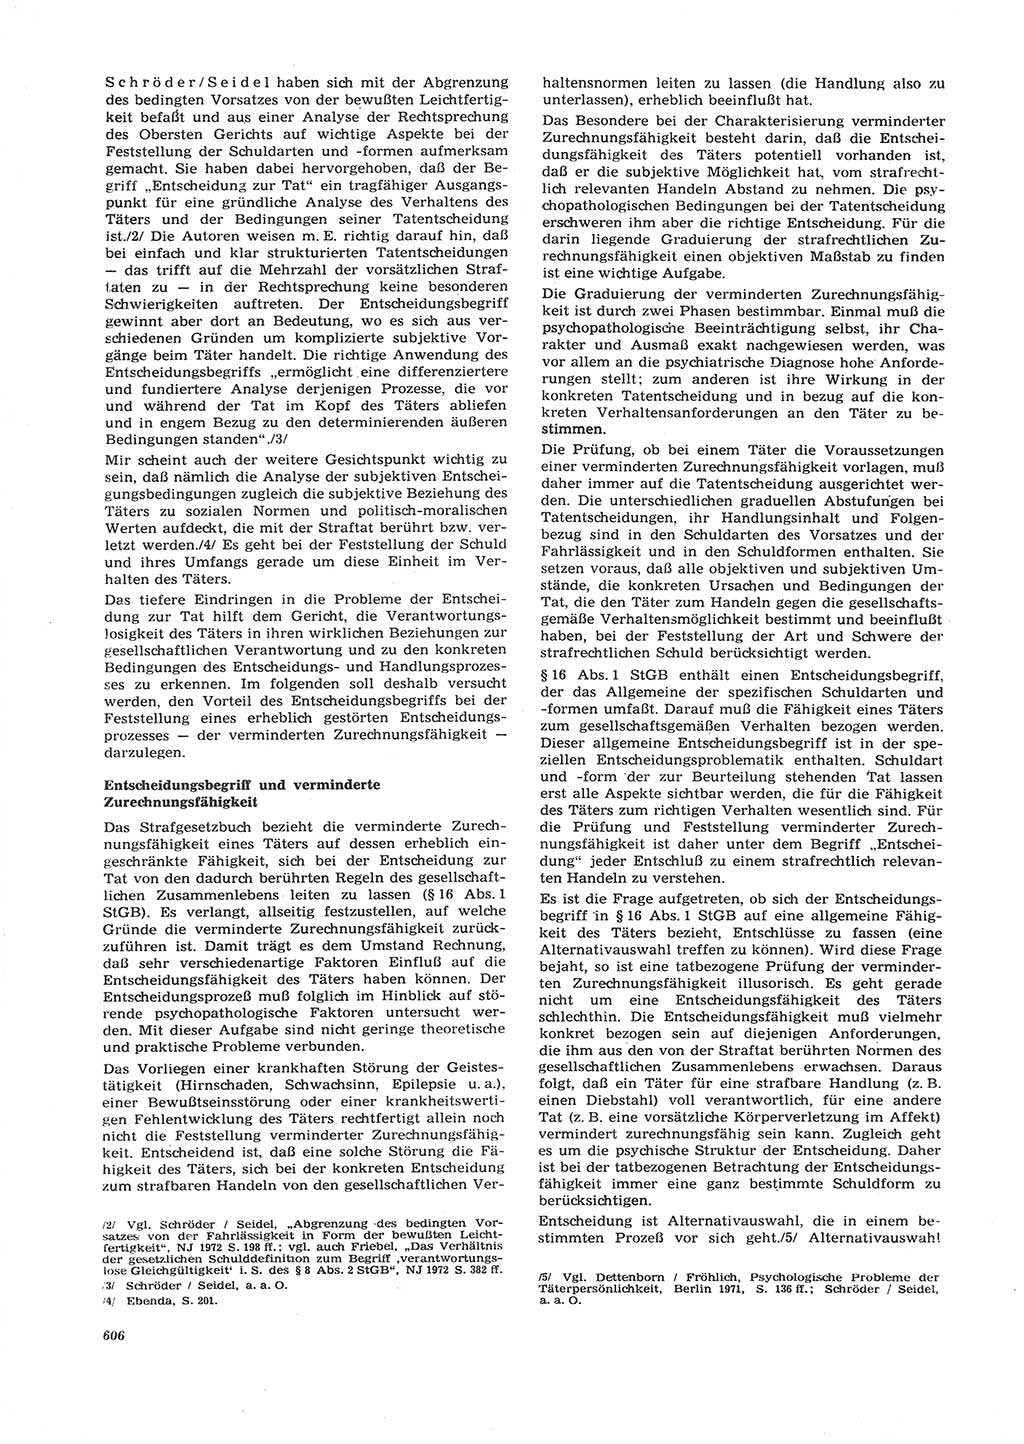 Neue Justiz (NJ), Zeitschrift für Recht und Rechtswissenschaft [Deutsche Demokratische Republik (DDR)], 26. Jahrgang 1972, Seite 606 (NJ DDR 1972, S. 606)